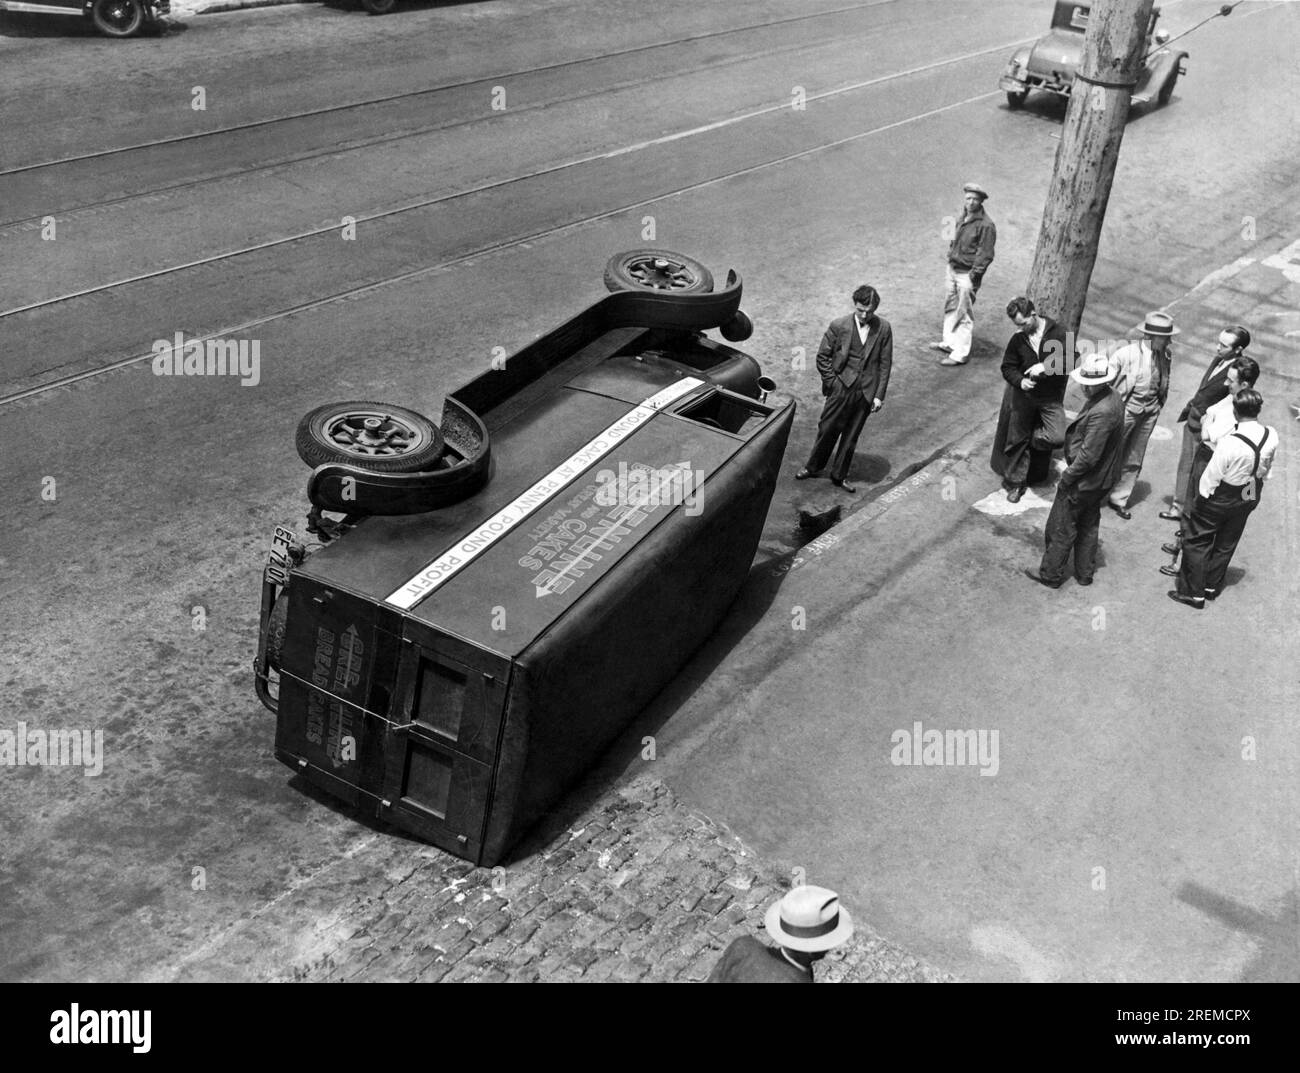 San Francisco, California: 20 luglio 1934. Il conducente di questo camion da panetteria Greenline è stato informato dagli scioperanti che sarebbe stato meglio non lavorare durante lo sciopero sul lungomare. Foto Stock